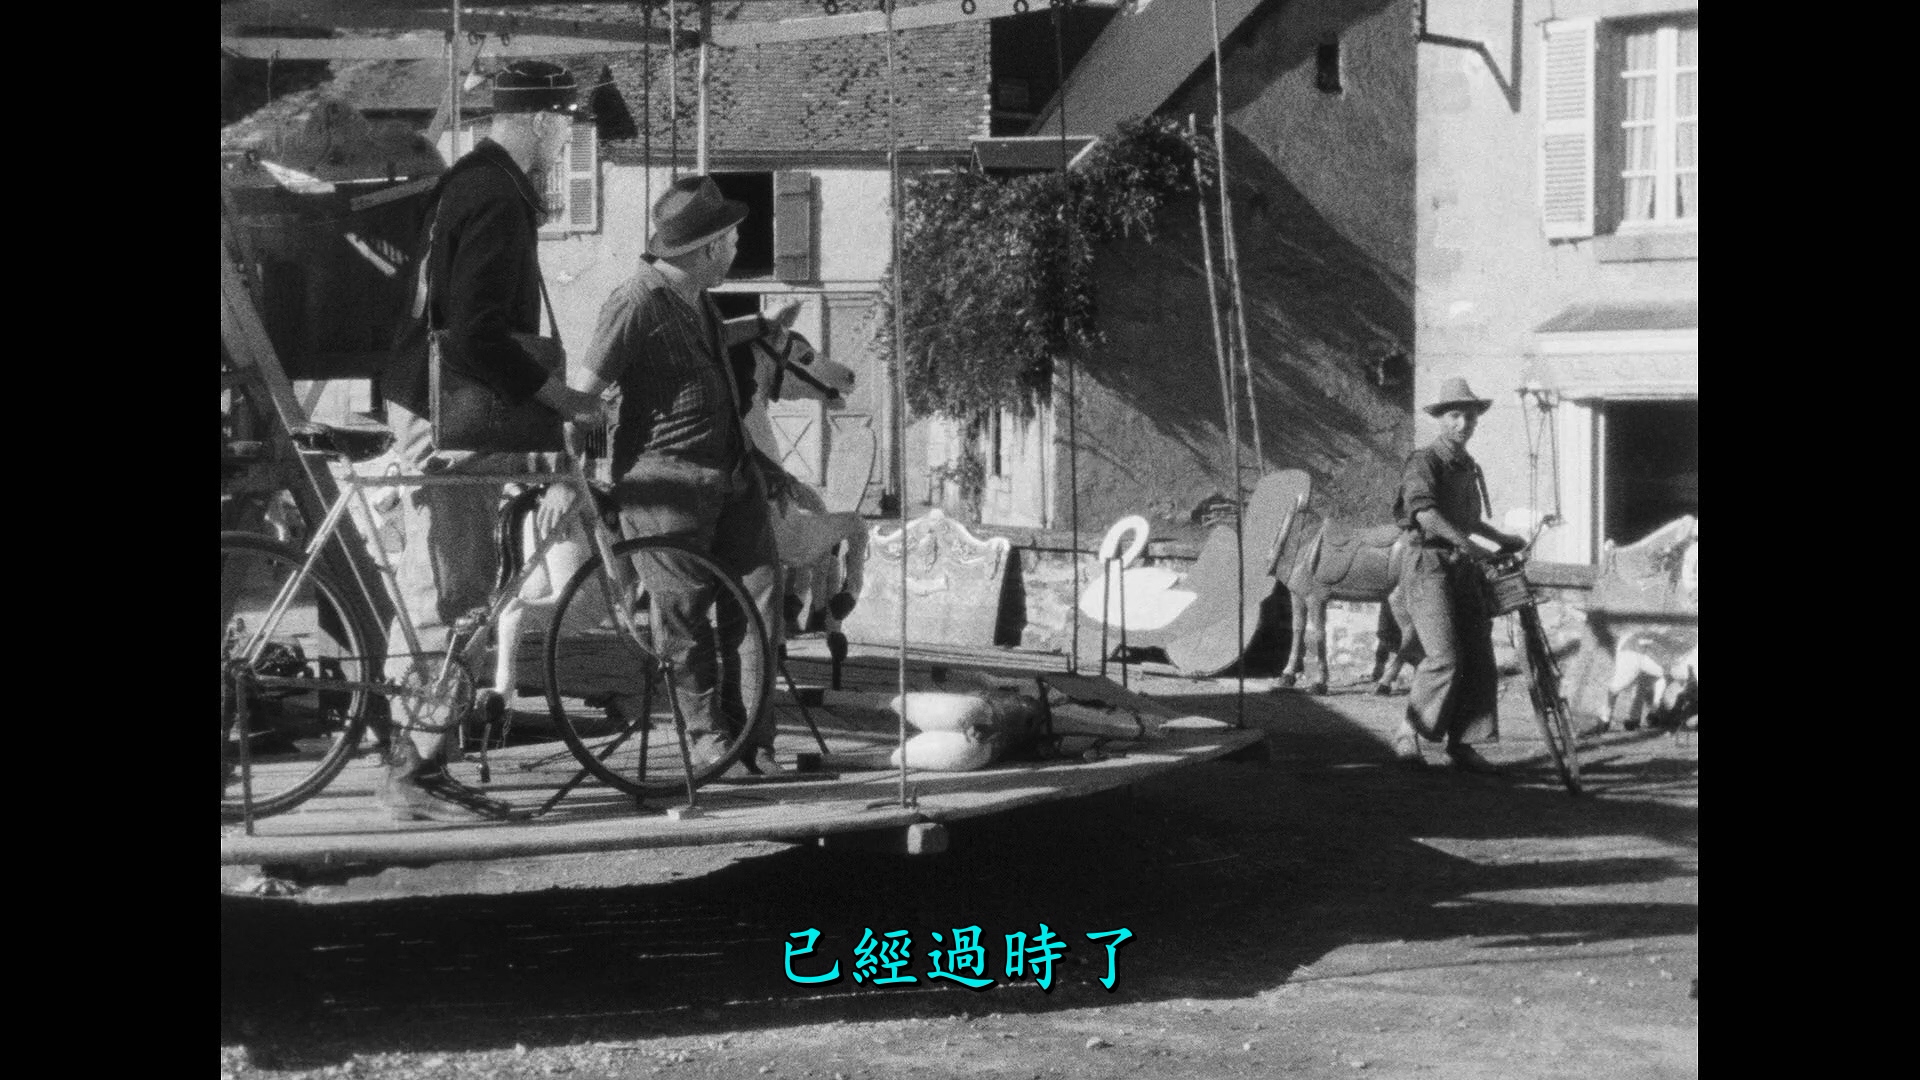 节日/Holiday[DiY简繁字幕].The.Village.Fair.1949.Criterion.Collection.Blu-ray.1080p.AVC.LPCM.1.0-DiY@TAG 46.55GB-8.jpg